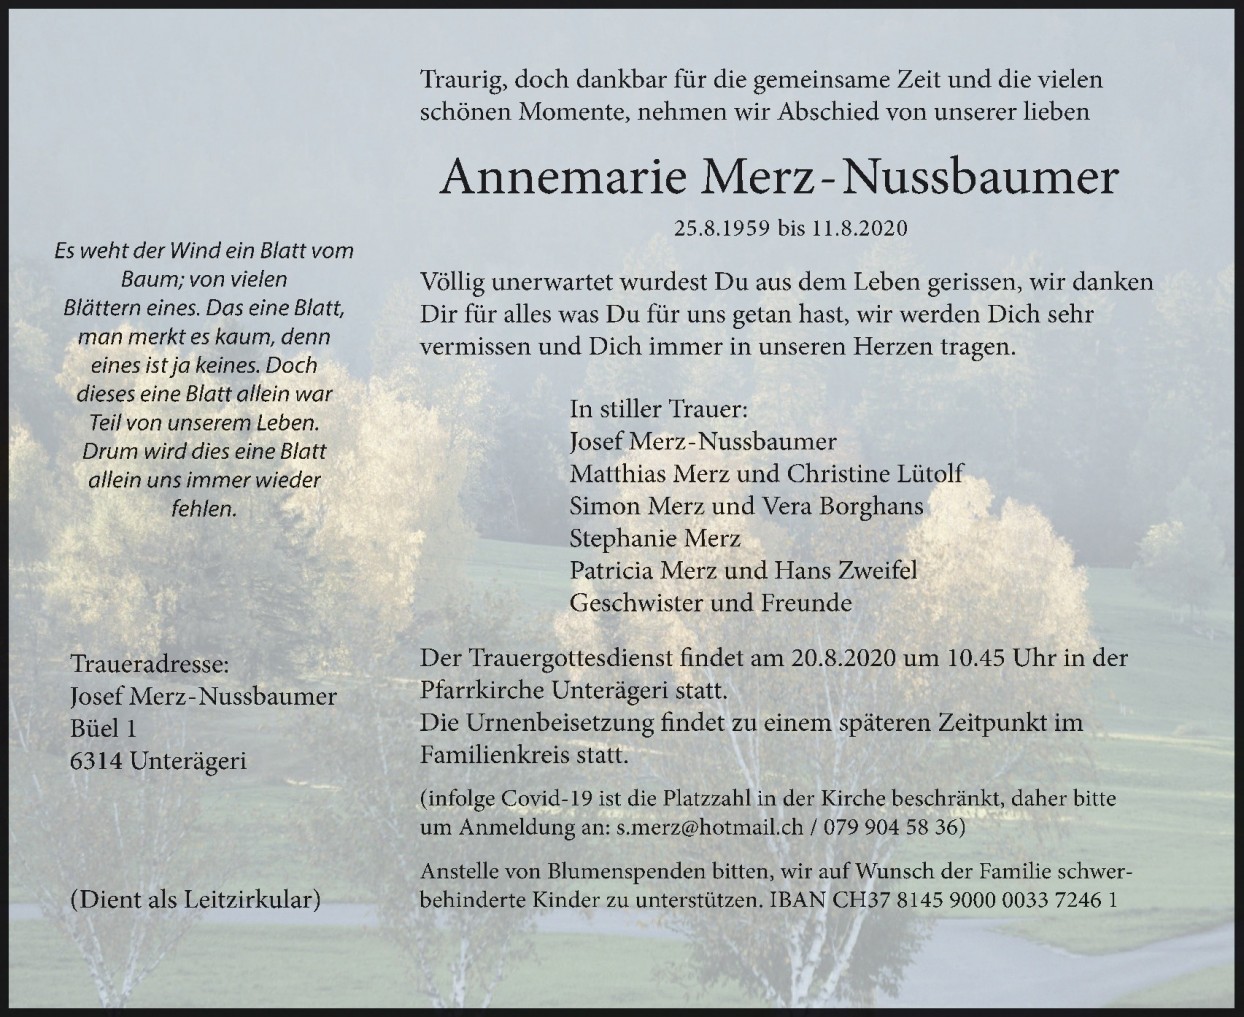 Annemarie Merz-Nussbaumer